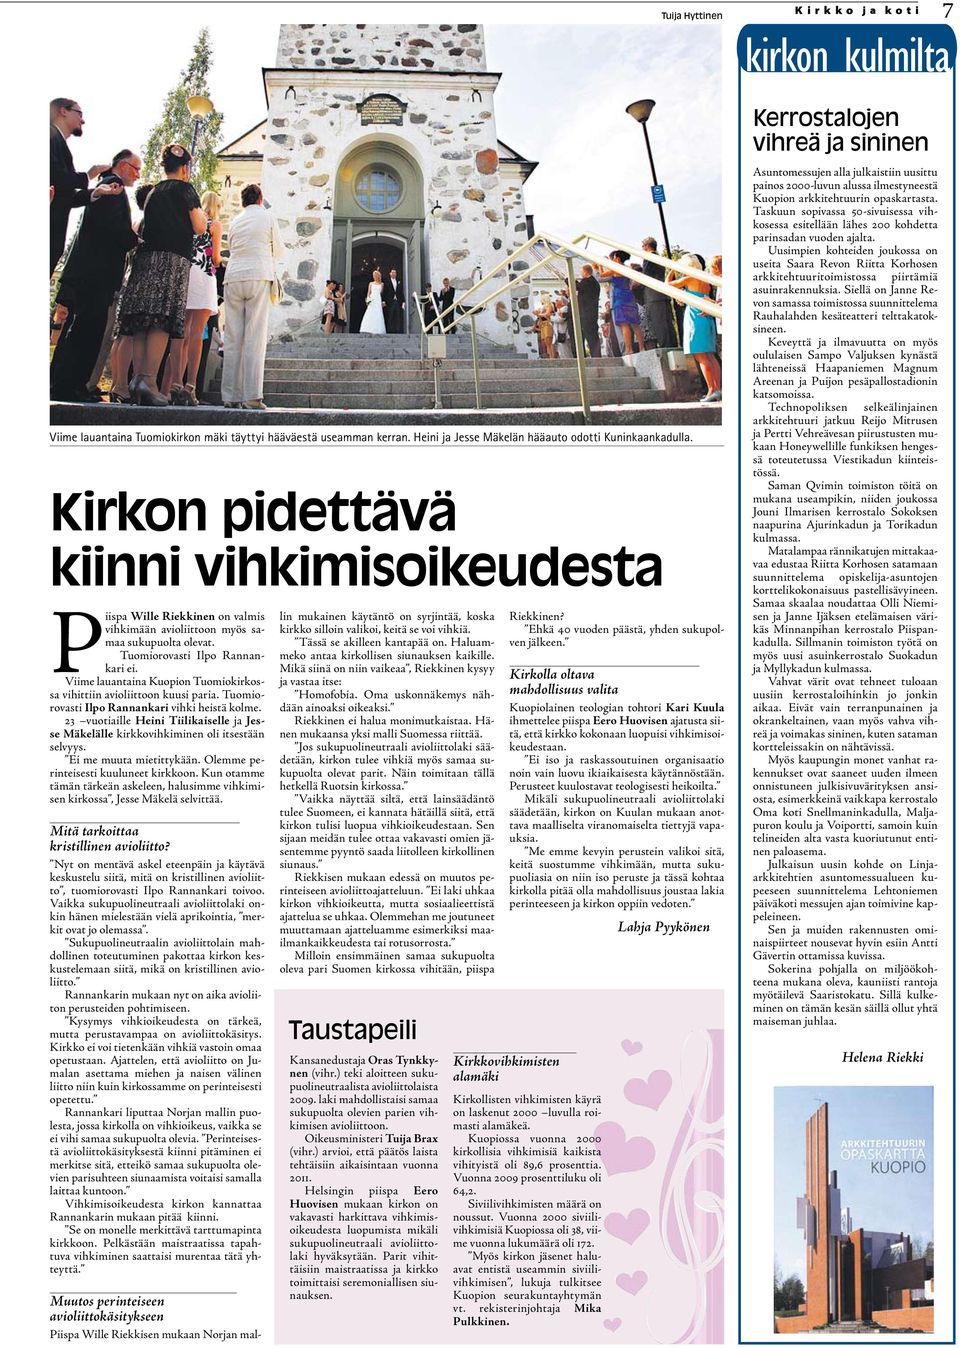 Viime lauantaina Kuopion Tuomiokirkossa vihittiin avioliittoon kuusi paria. Tuomiorovasti Ilpo Rannankari vihki heistä kolme.